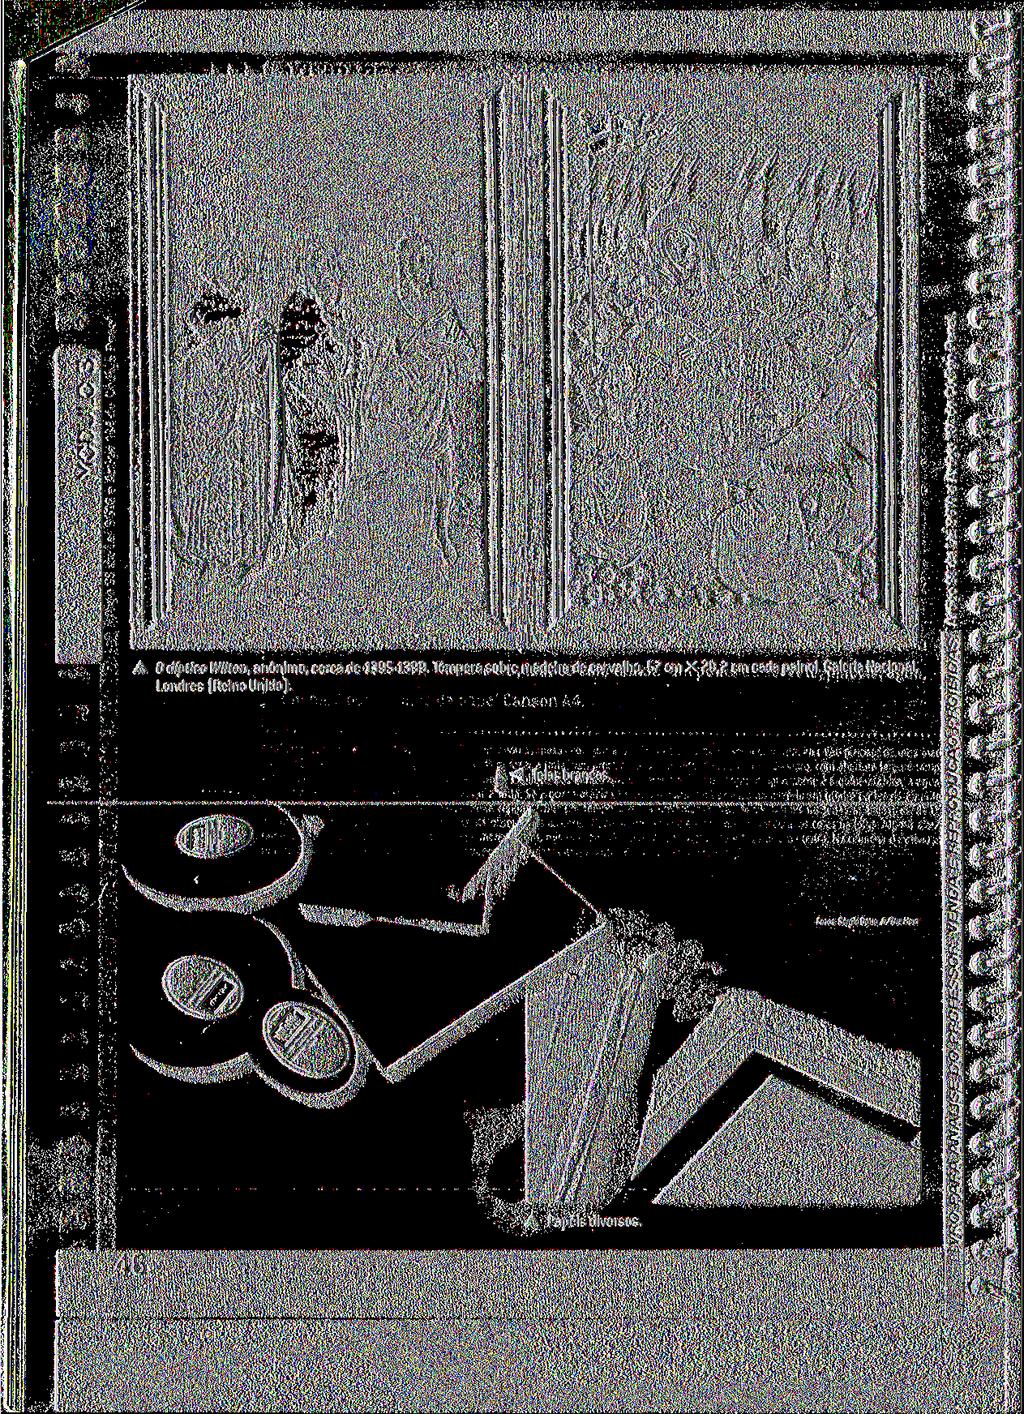 c * 5 o u e OI r s A O díptico Wilton, anônimo, cerca de 1395-1399 Tempera sobre madeira de carvalho, 57 cm